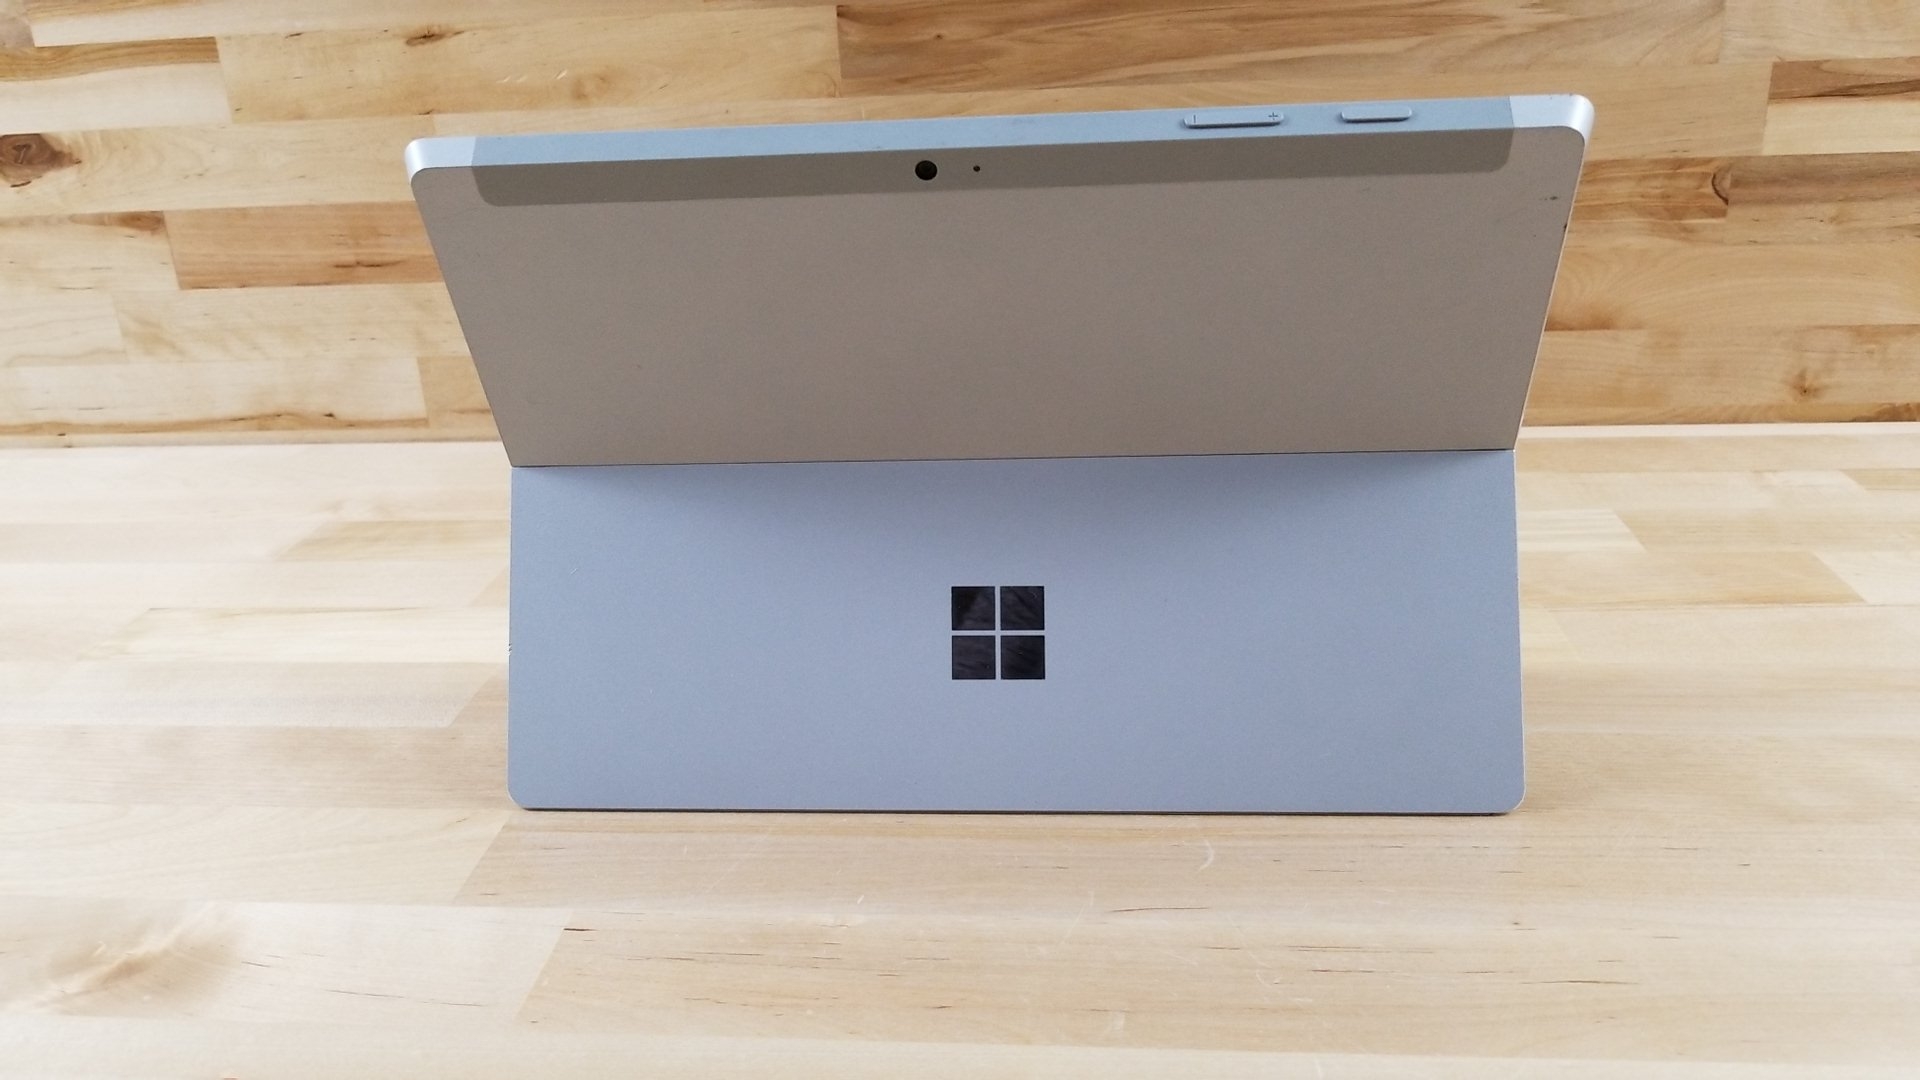 Microsoft Surface 3 10.8" 1.60GHz Intel Atom x7-Z8700 64GB Wi-Fi + 4G